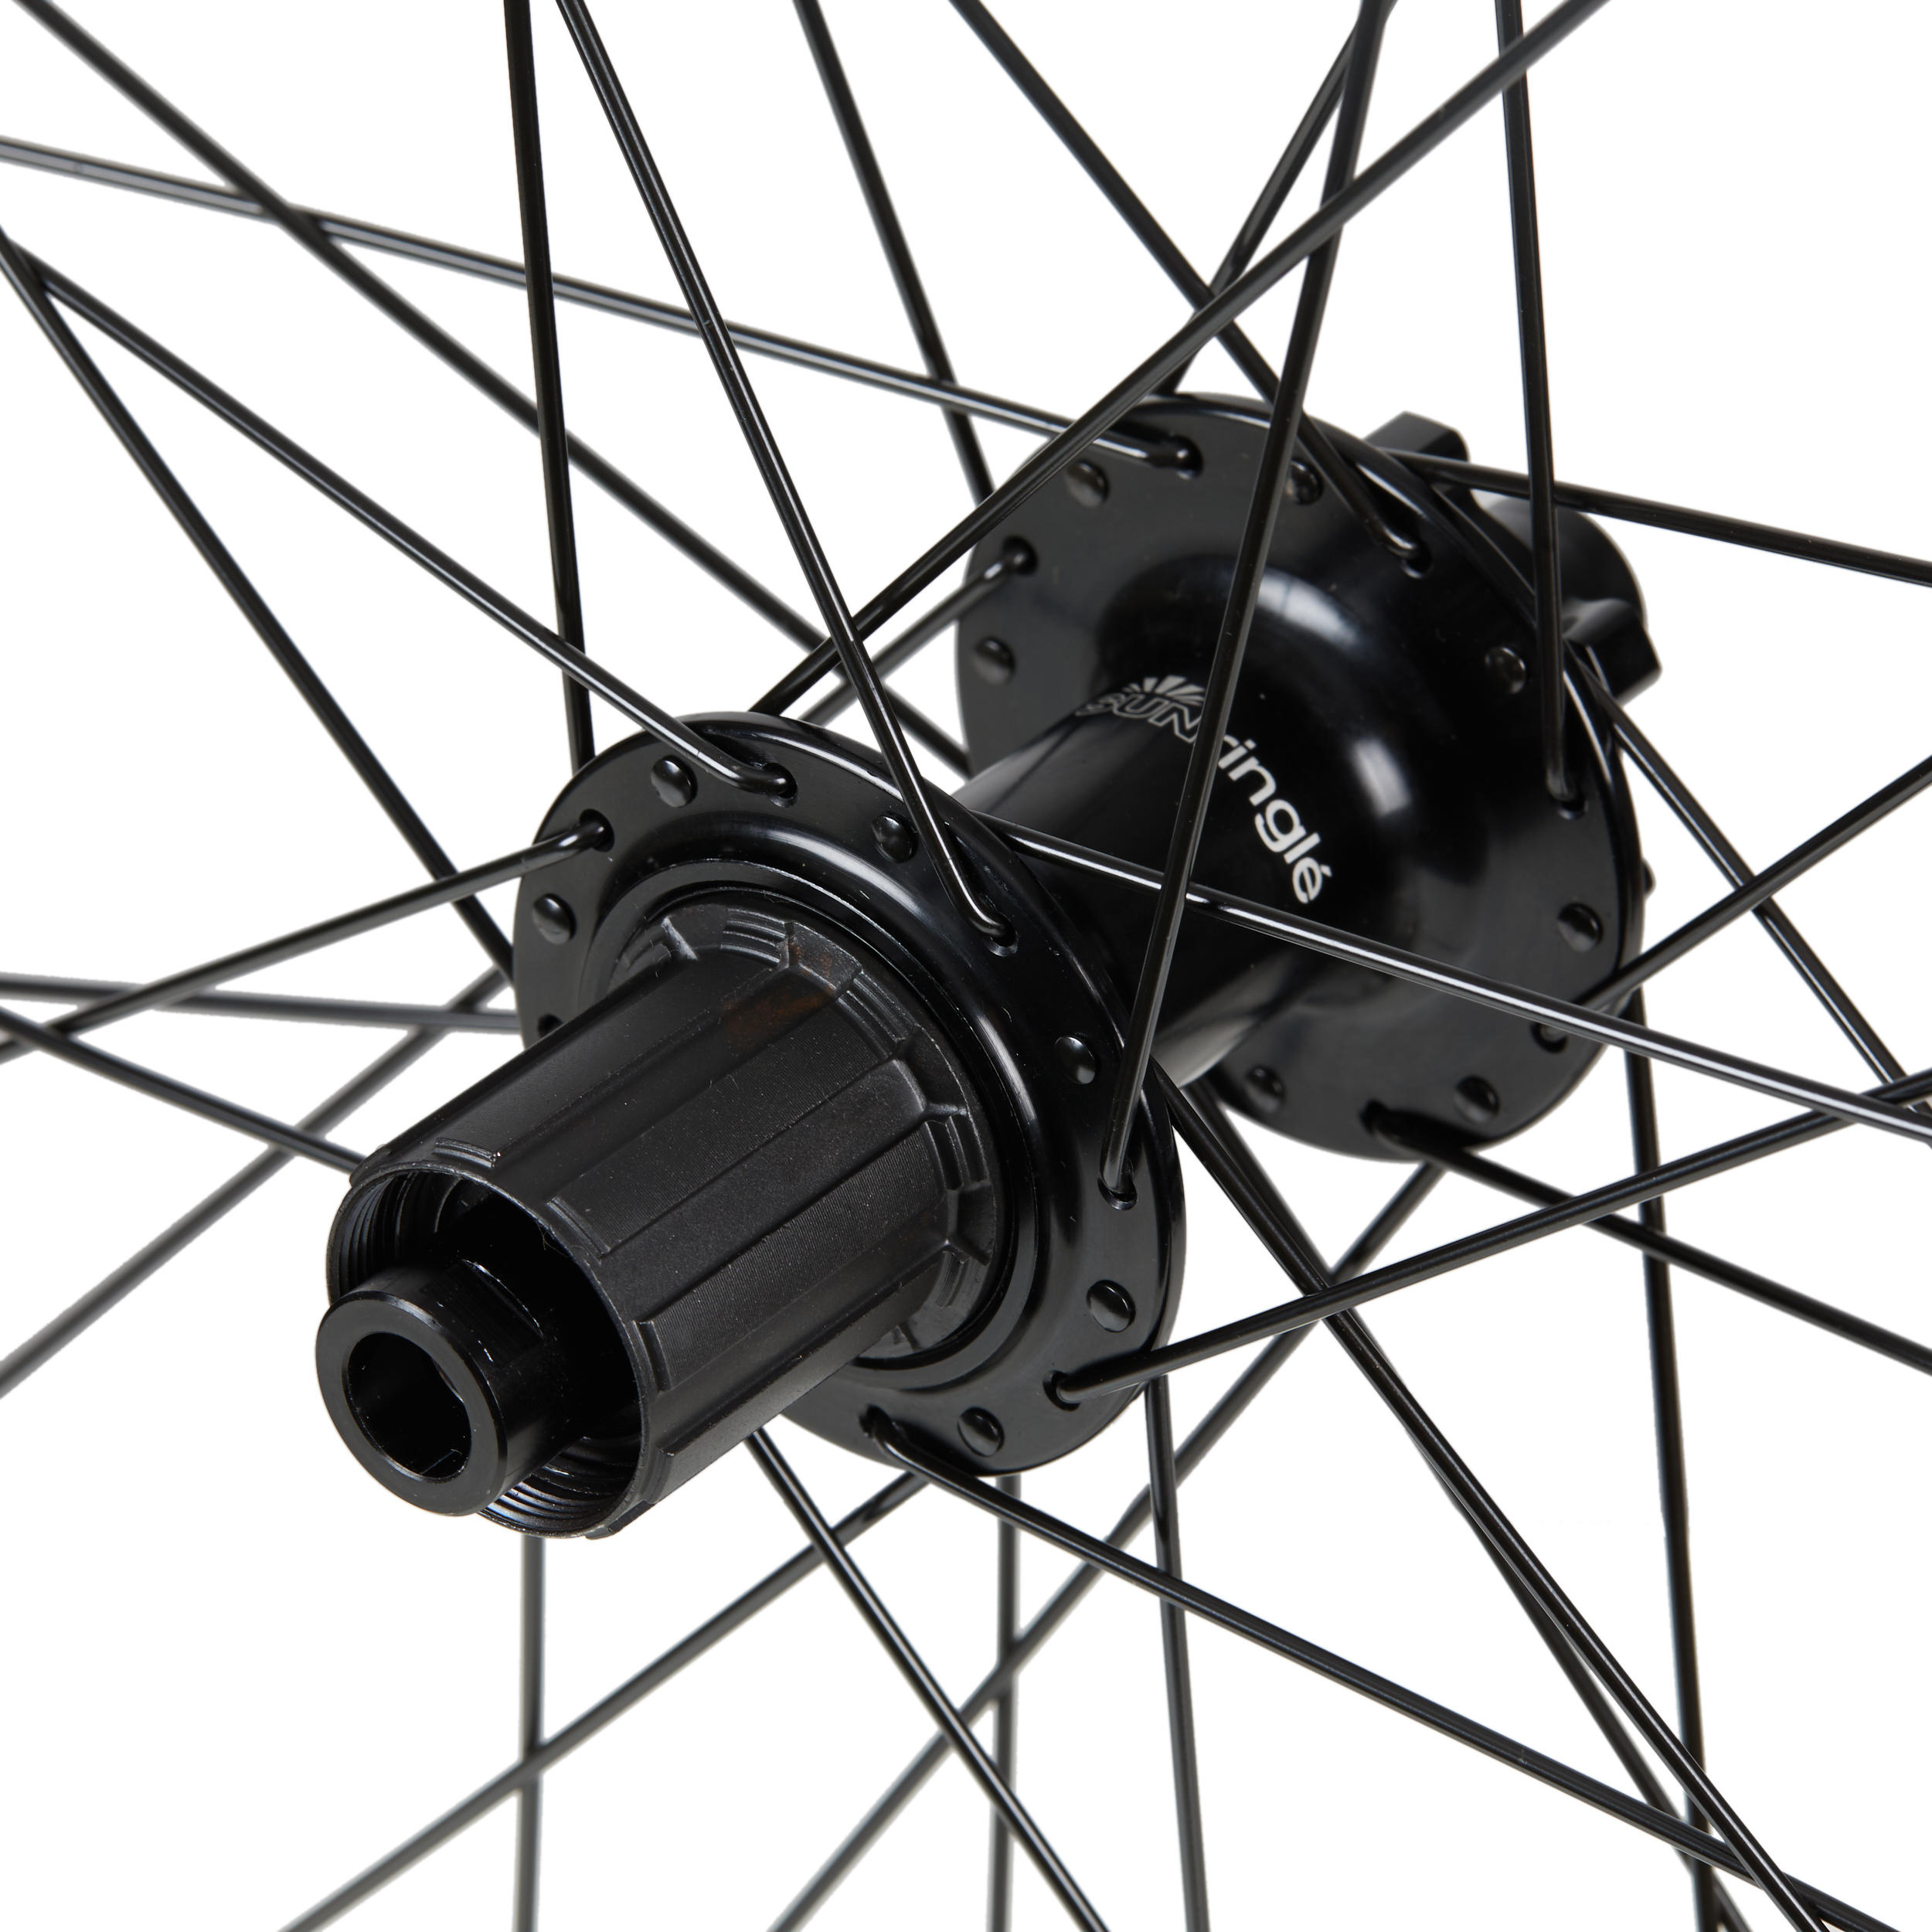 Mountain Bike Rear Wheel 29" Double Wall Cassette Disc Boost 12x148 Duroc 30 2/4